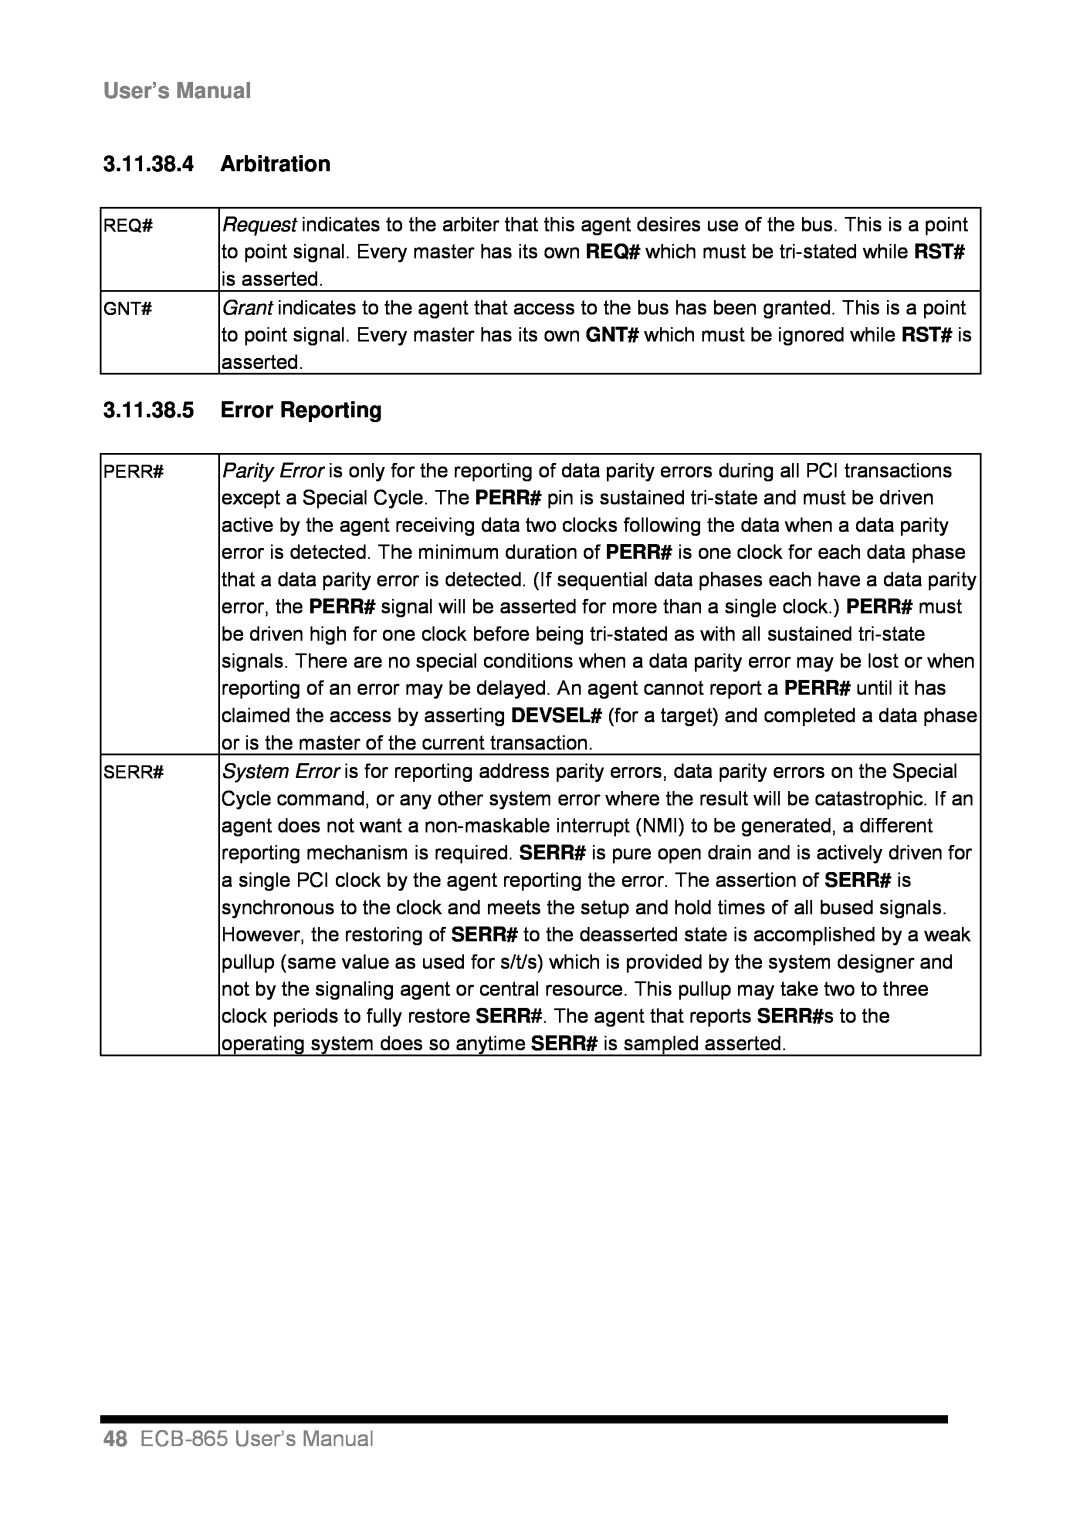 Intel user manual 3.11.38.4Arbitration, 3.11.38.5Error Reporting, 48ECB-865User’s Manual 